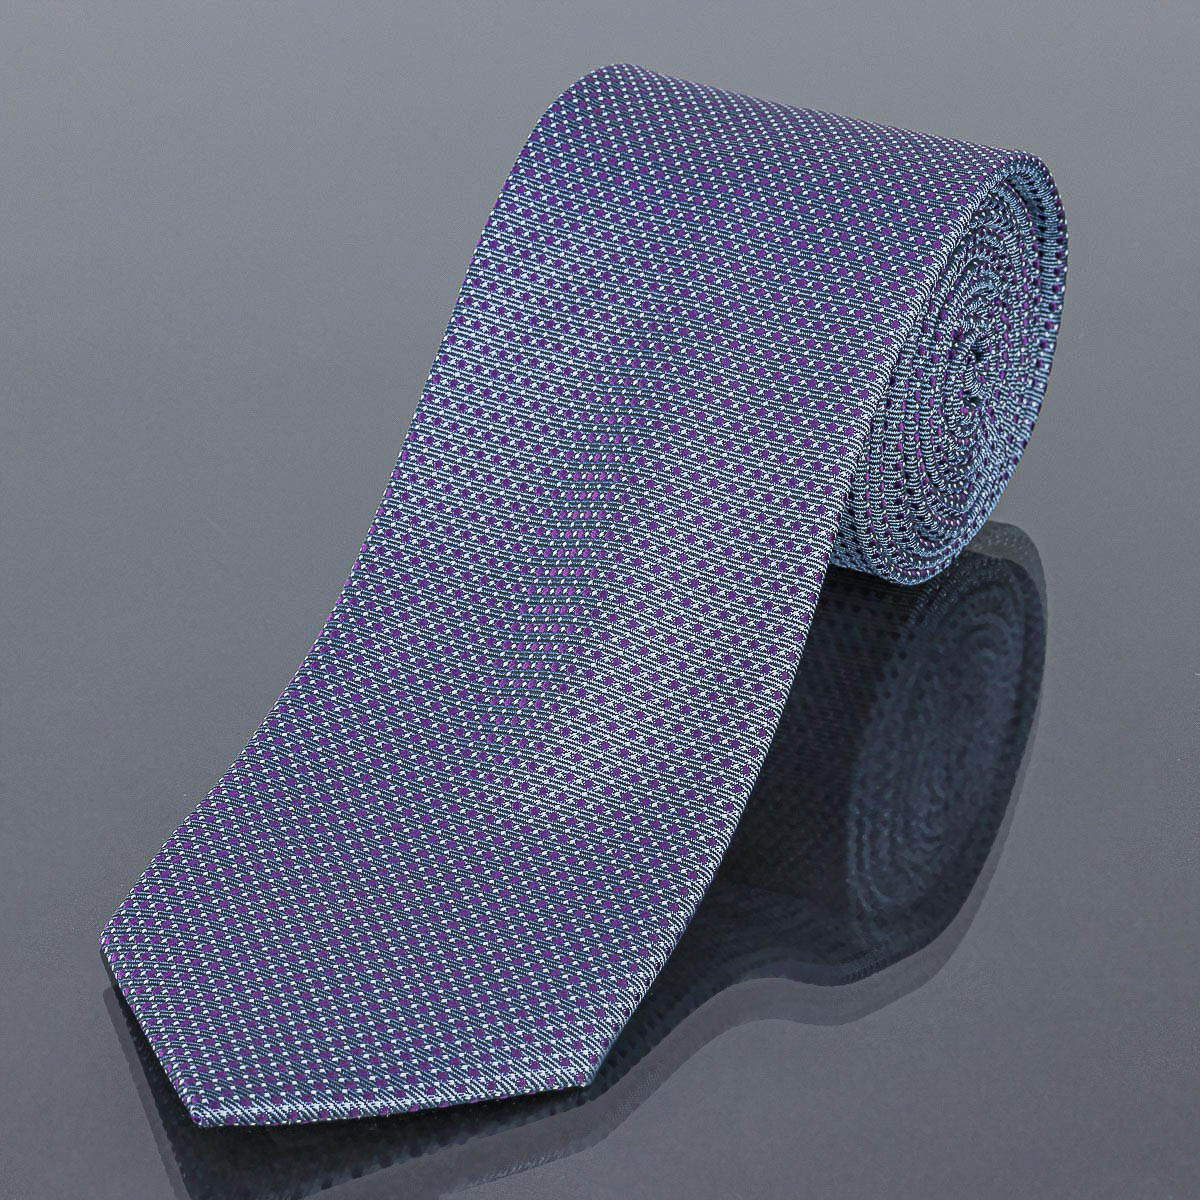 Kravata pánská AMJ fialové tečky KU1490, šedá